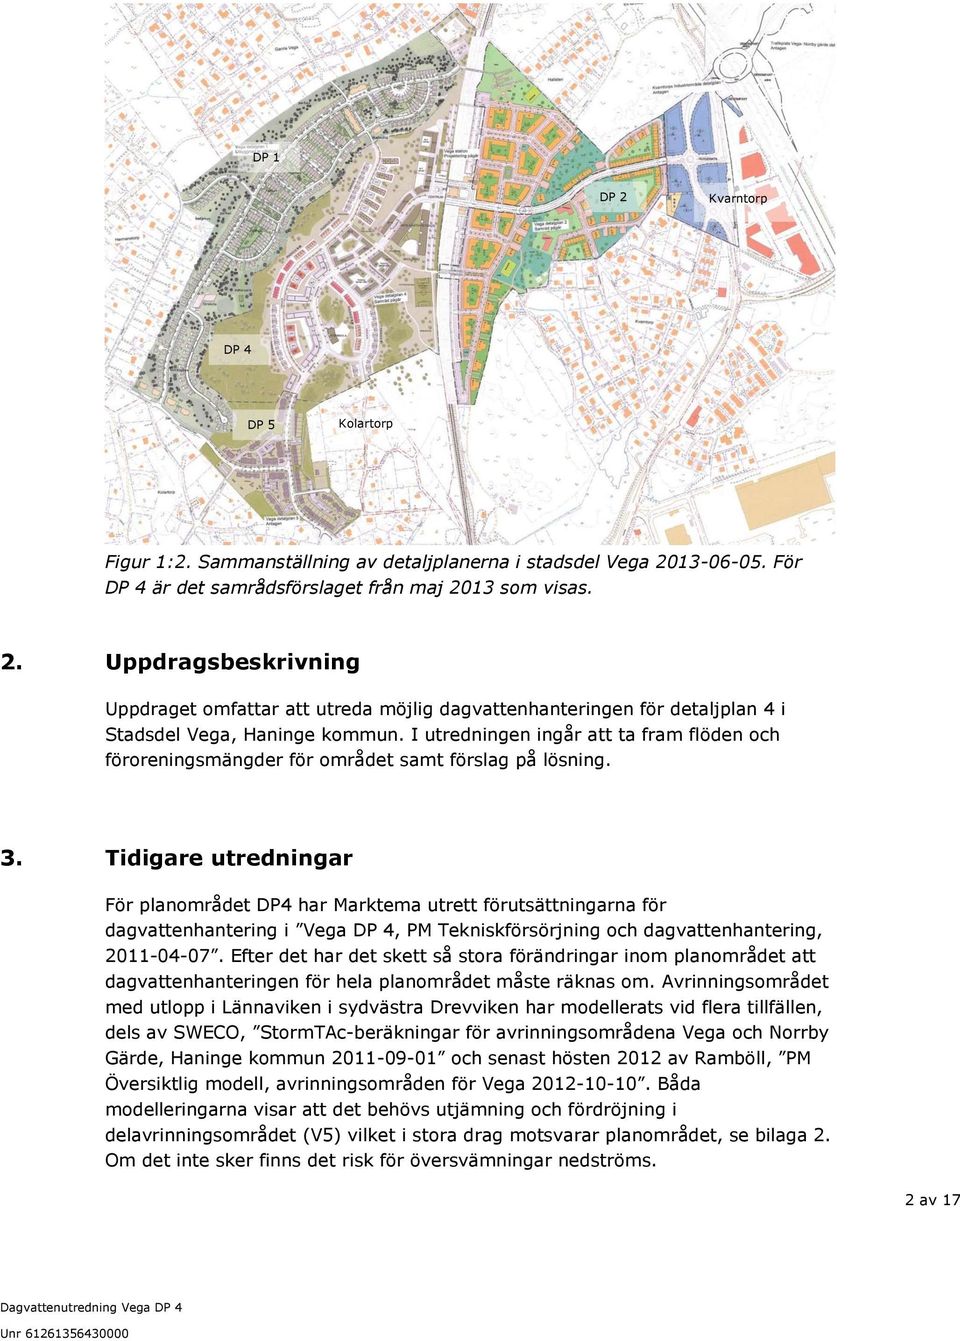 Tidigare utredningar För planområdet DP4 har Marktema utrett förutsättningarna för dagvattenhantering i Vega DP 4, PM Tekniskförsörjning och dagvattenhantering, 2011-04-07.